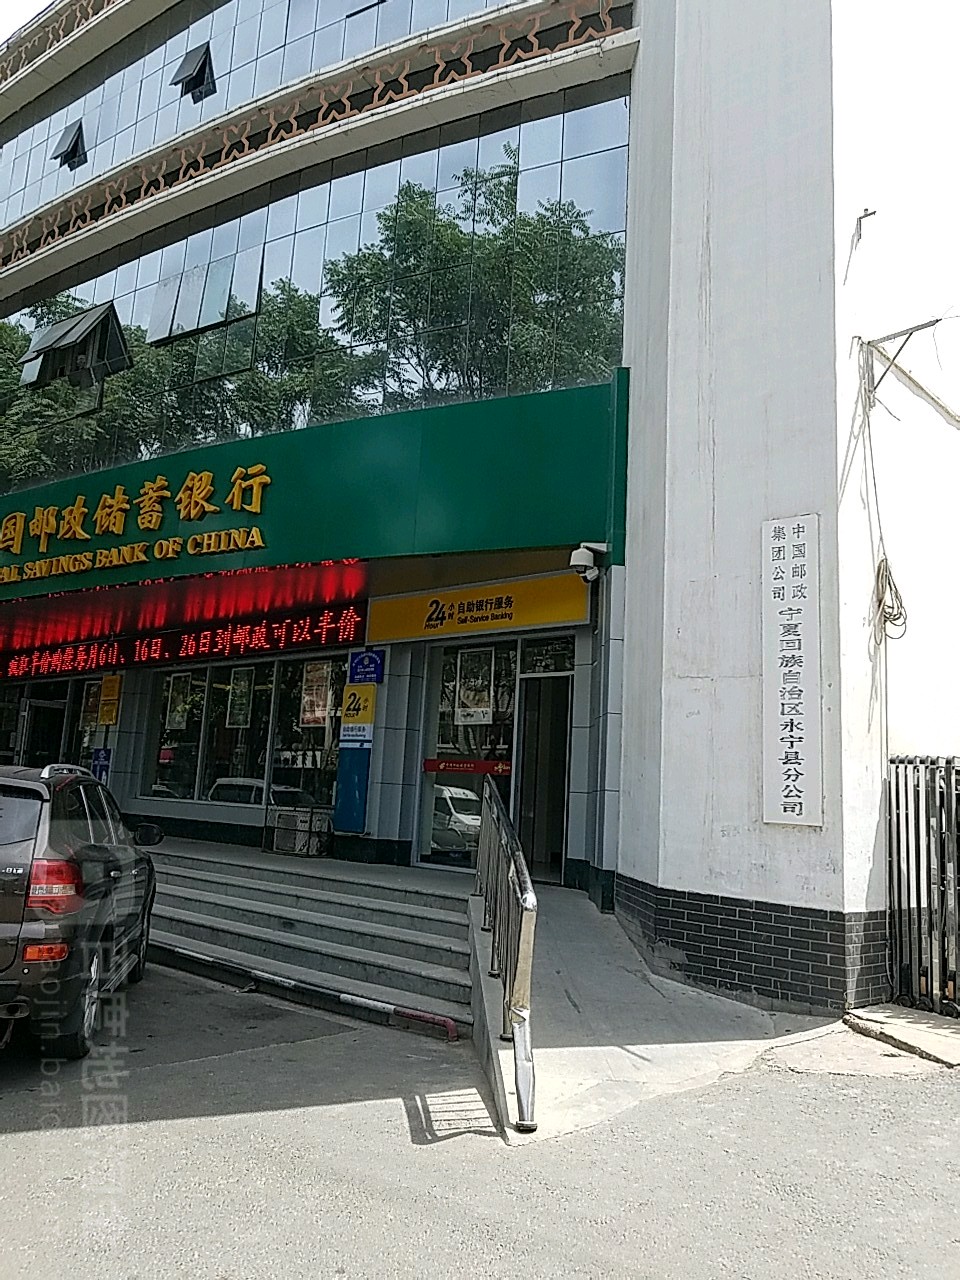 中国邮政储蓄银行24小时自助银行(南街支行)